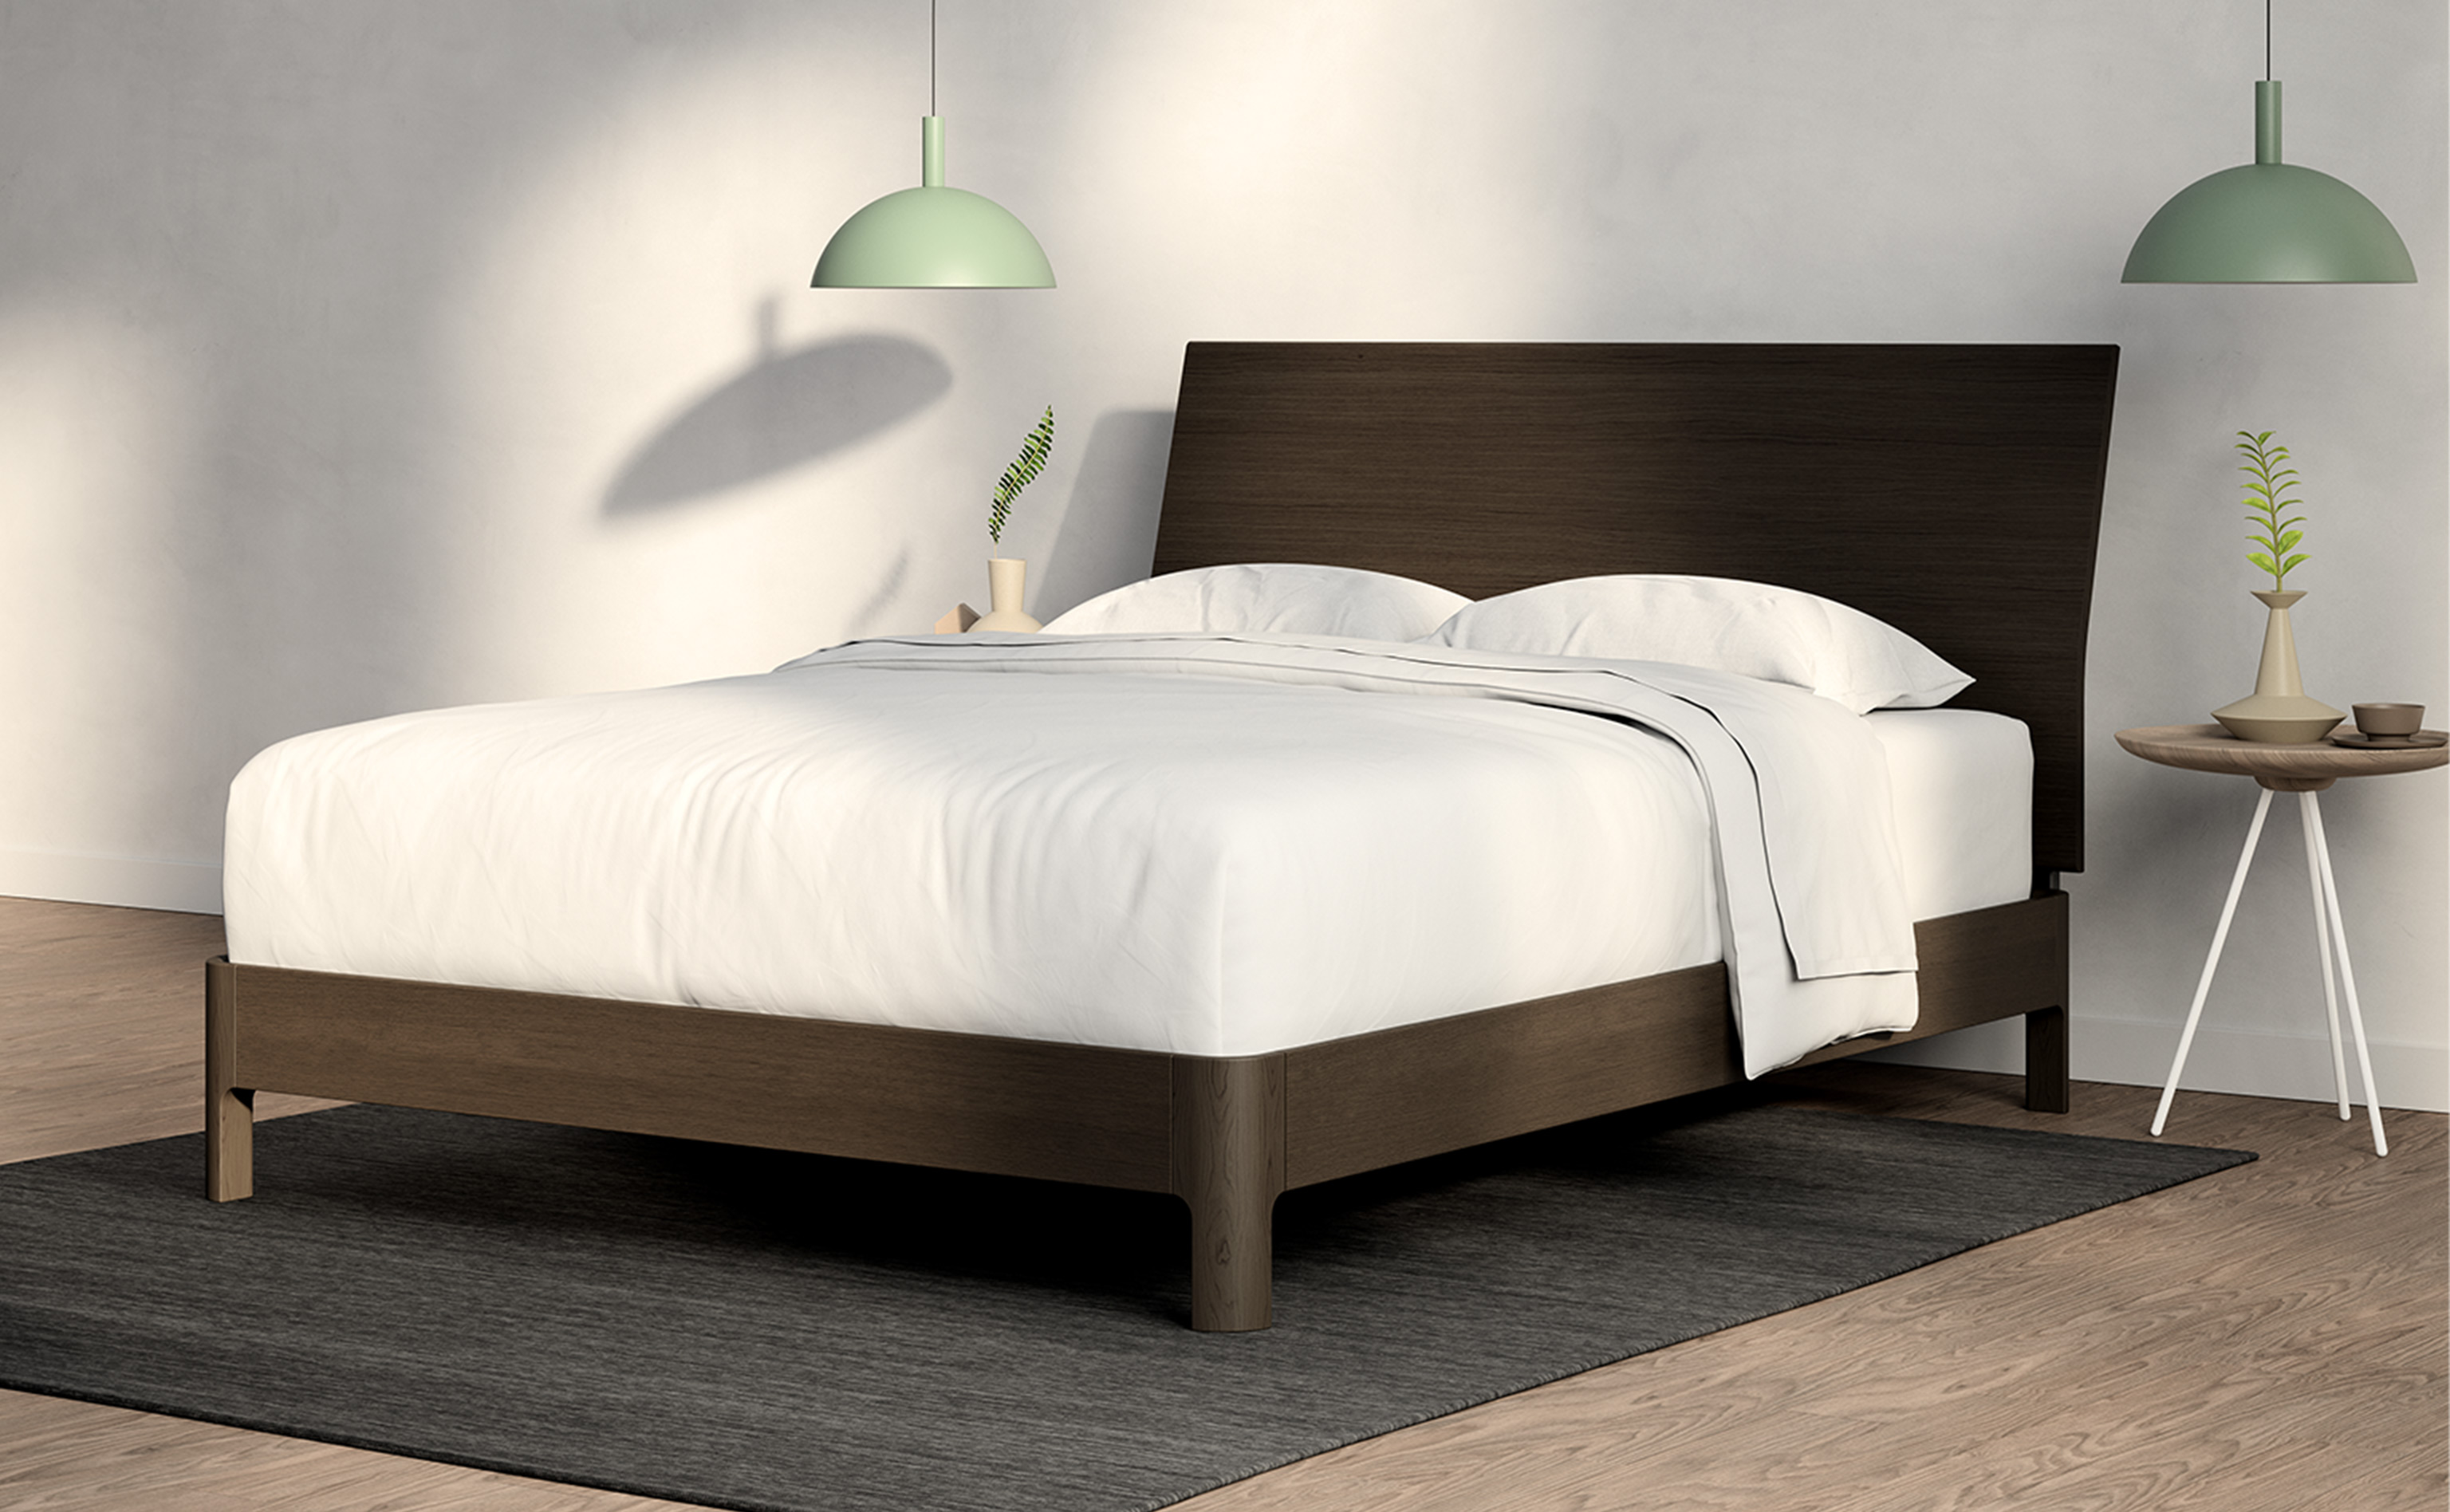 Casper Bed Setup Guide, Best Bed Frame For Casper Mattress